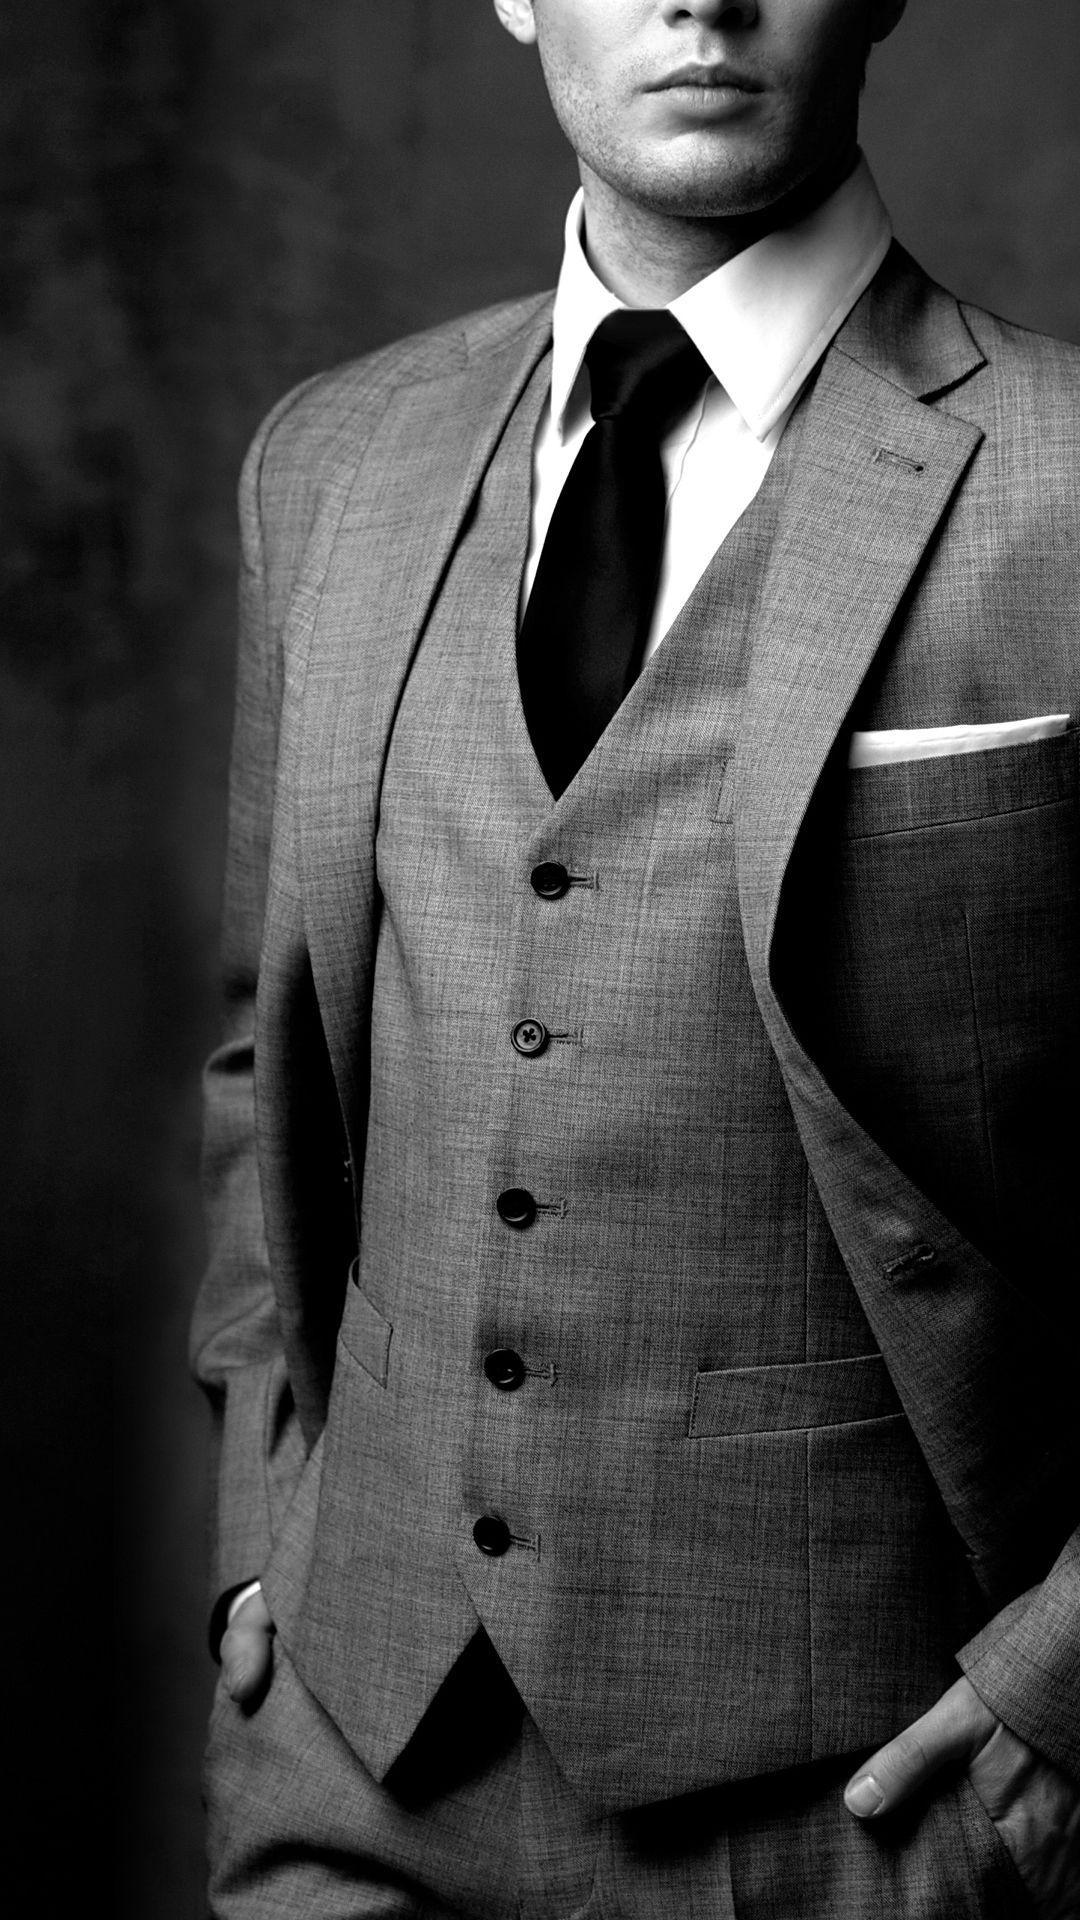 Premium Photo | Businessman in black suit on black